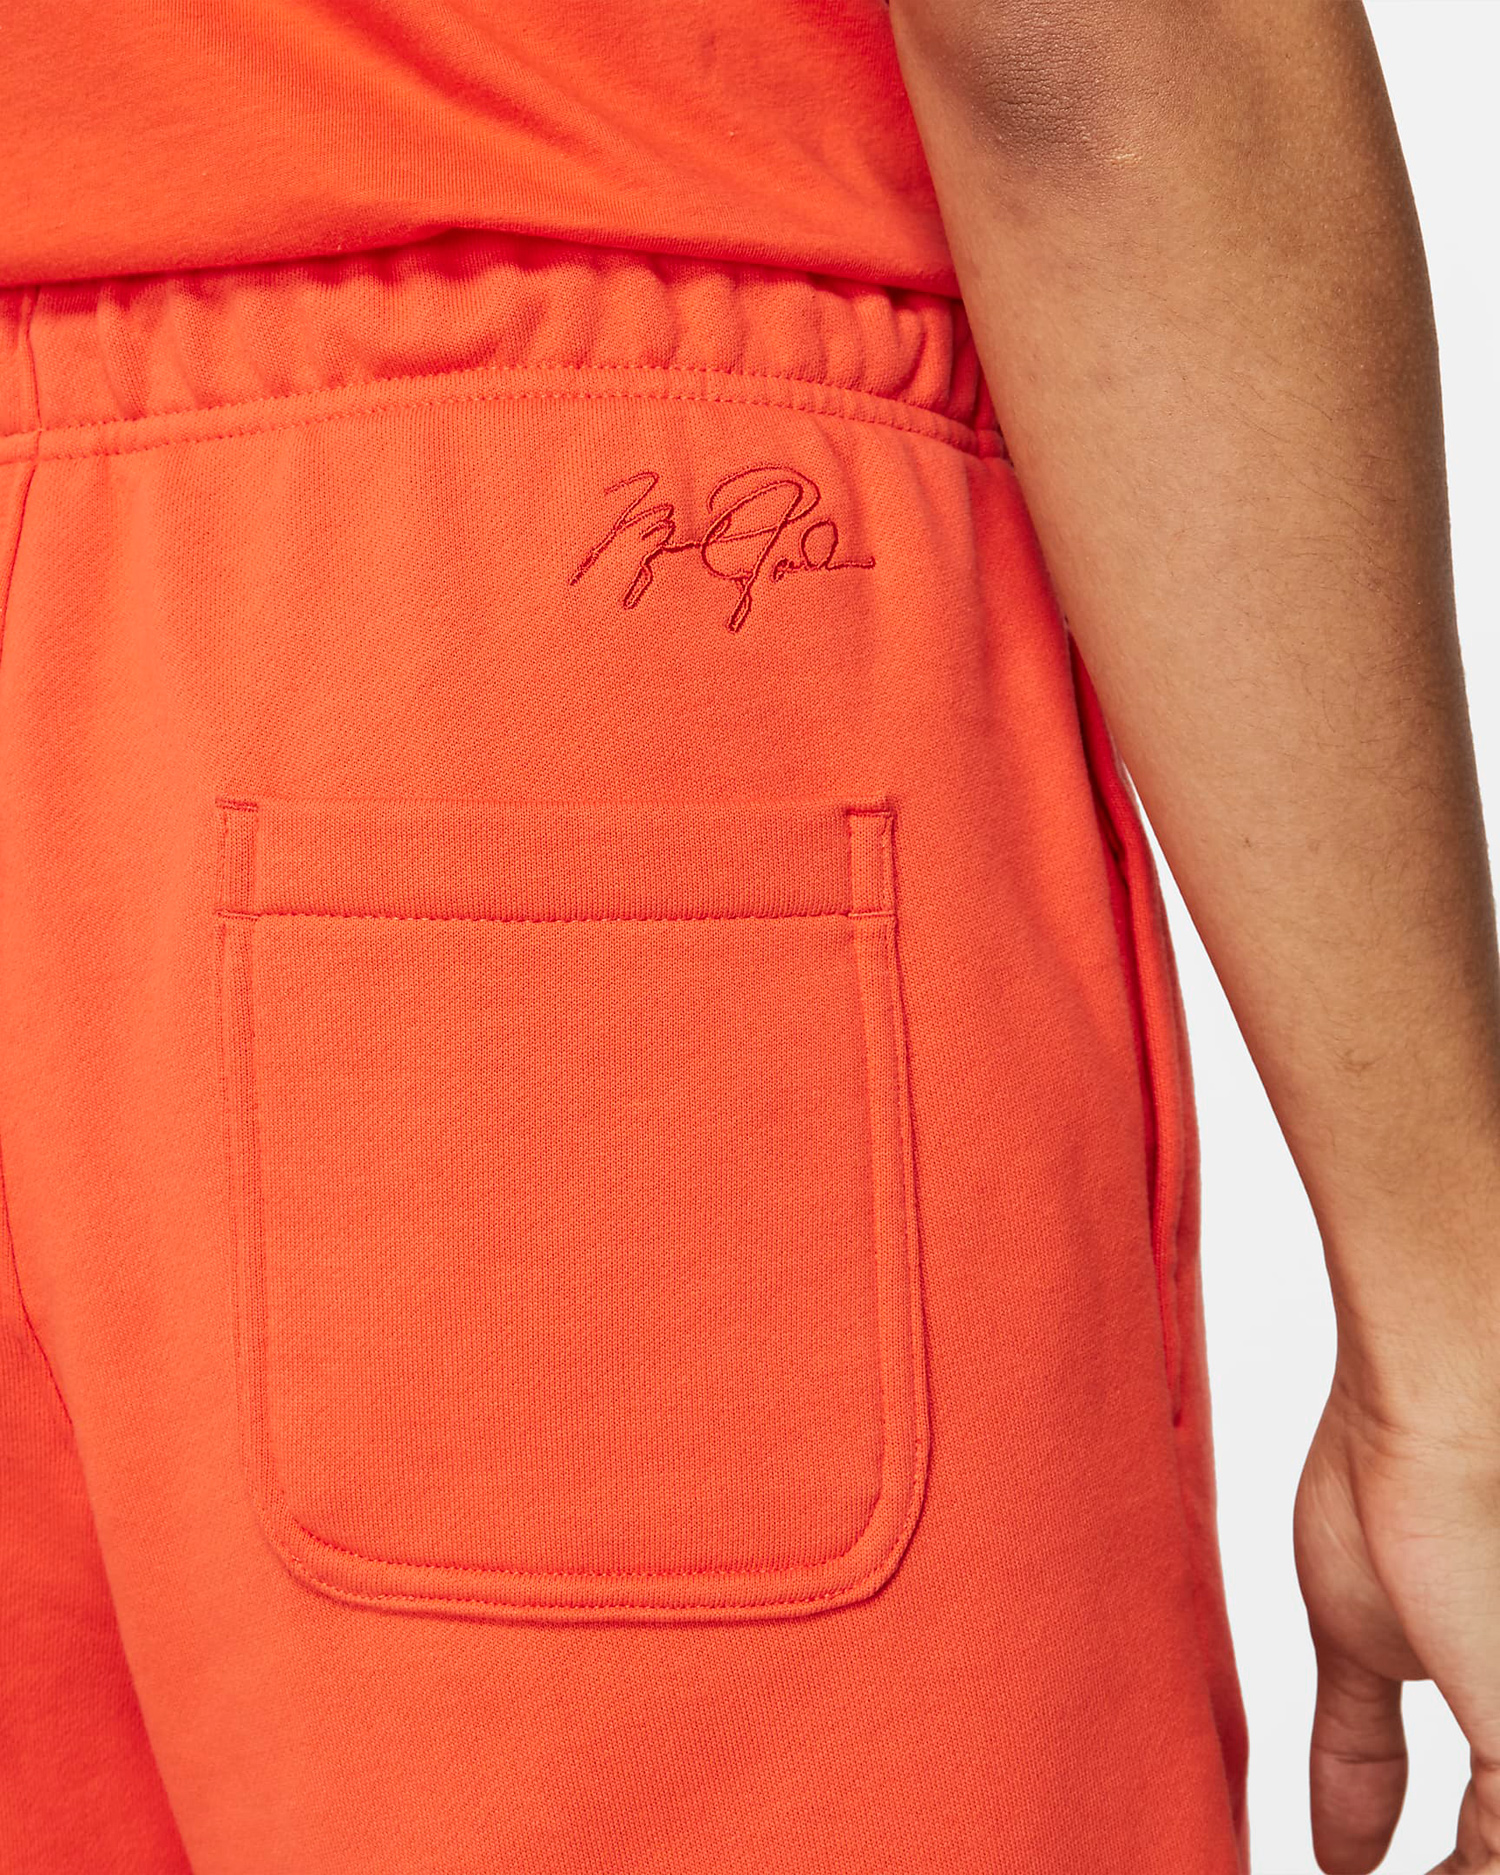 jordan-electro-orange-shorts-3